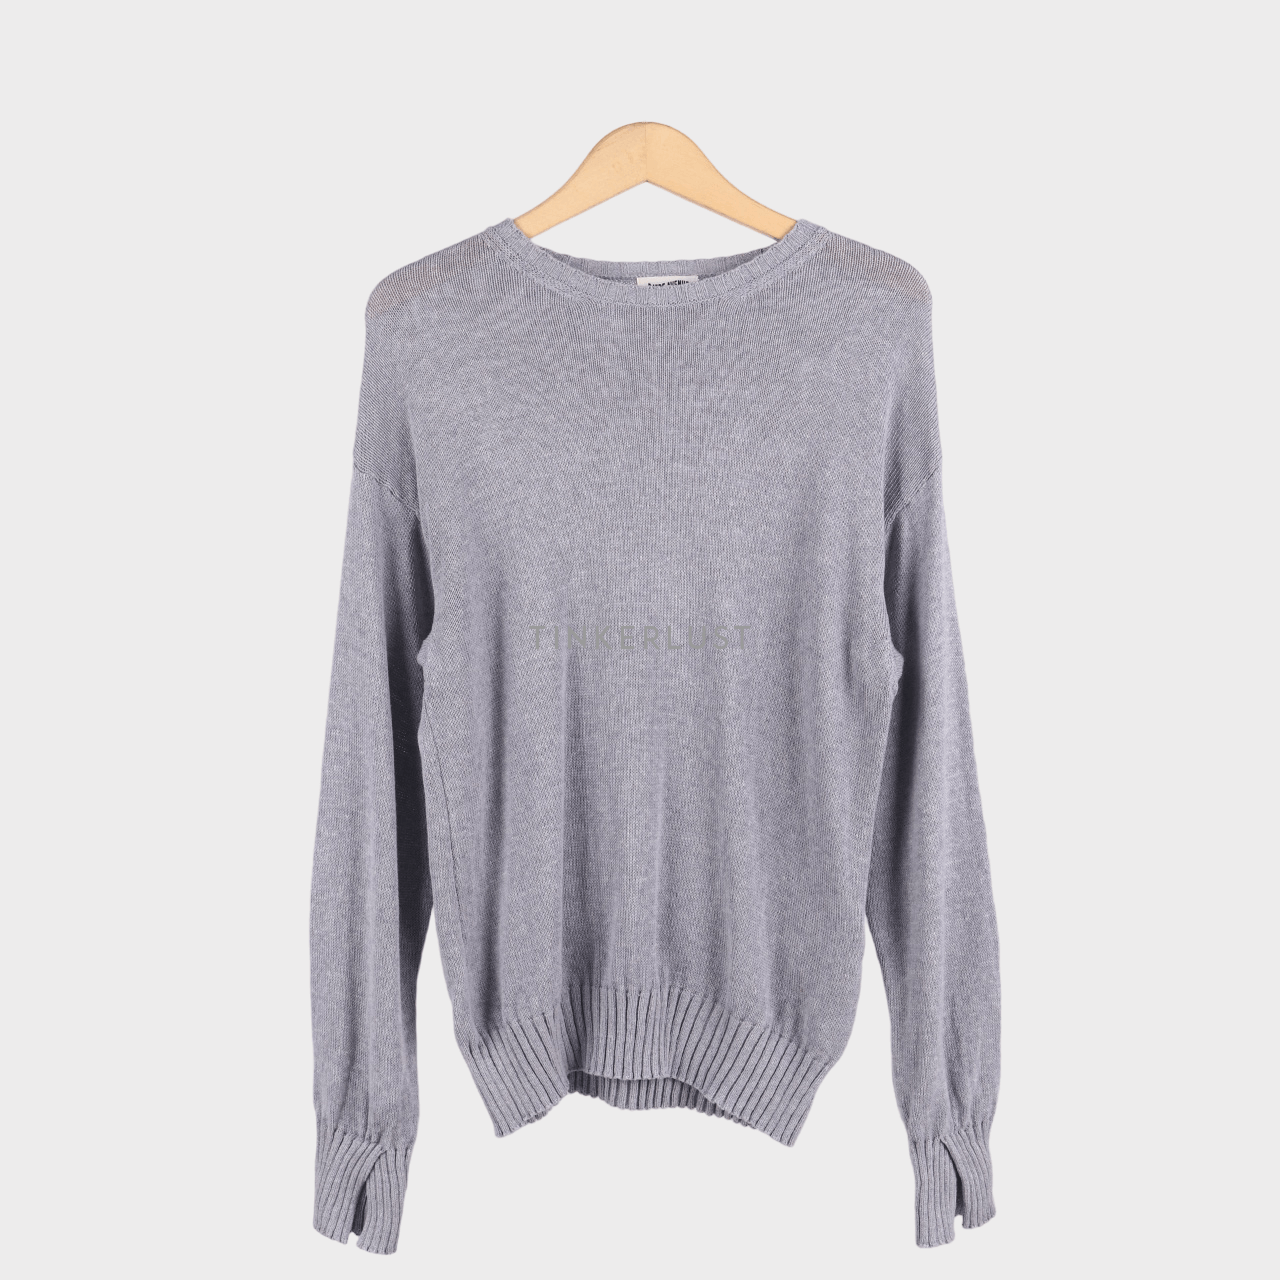 Djerf Avanue Grey Sweater